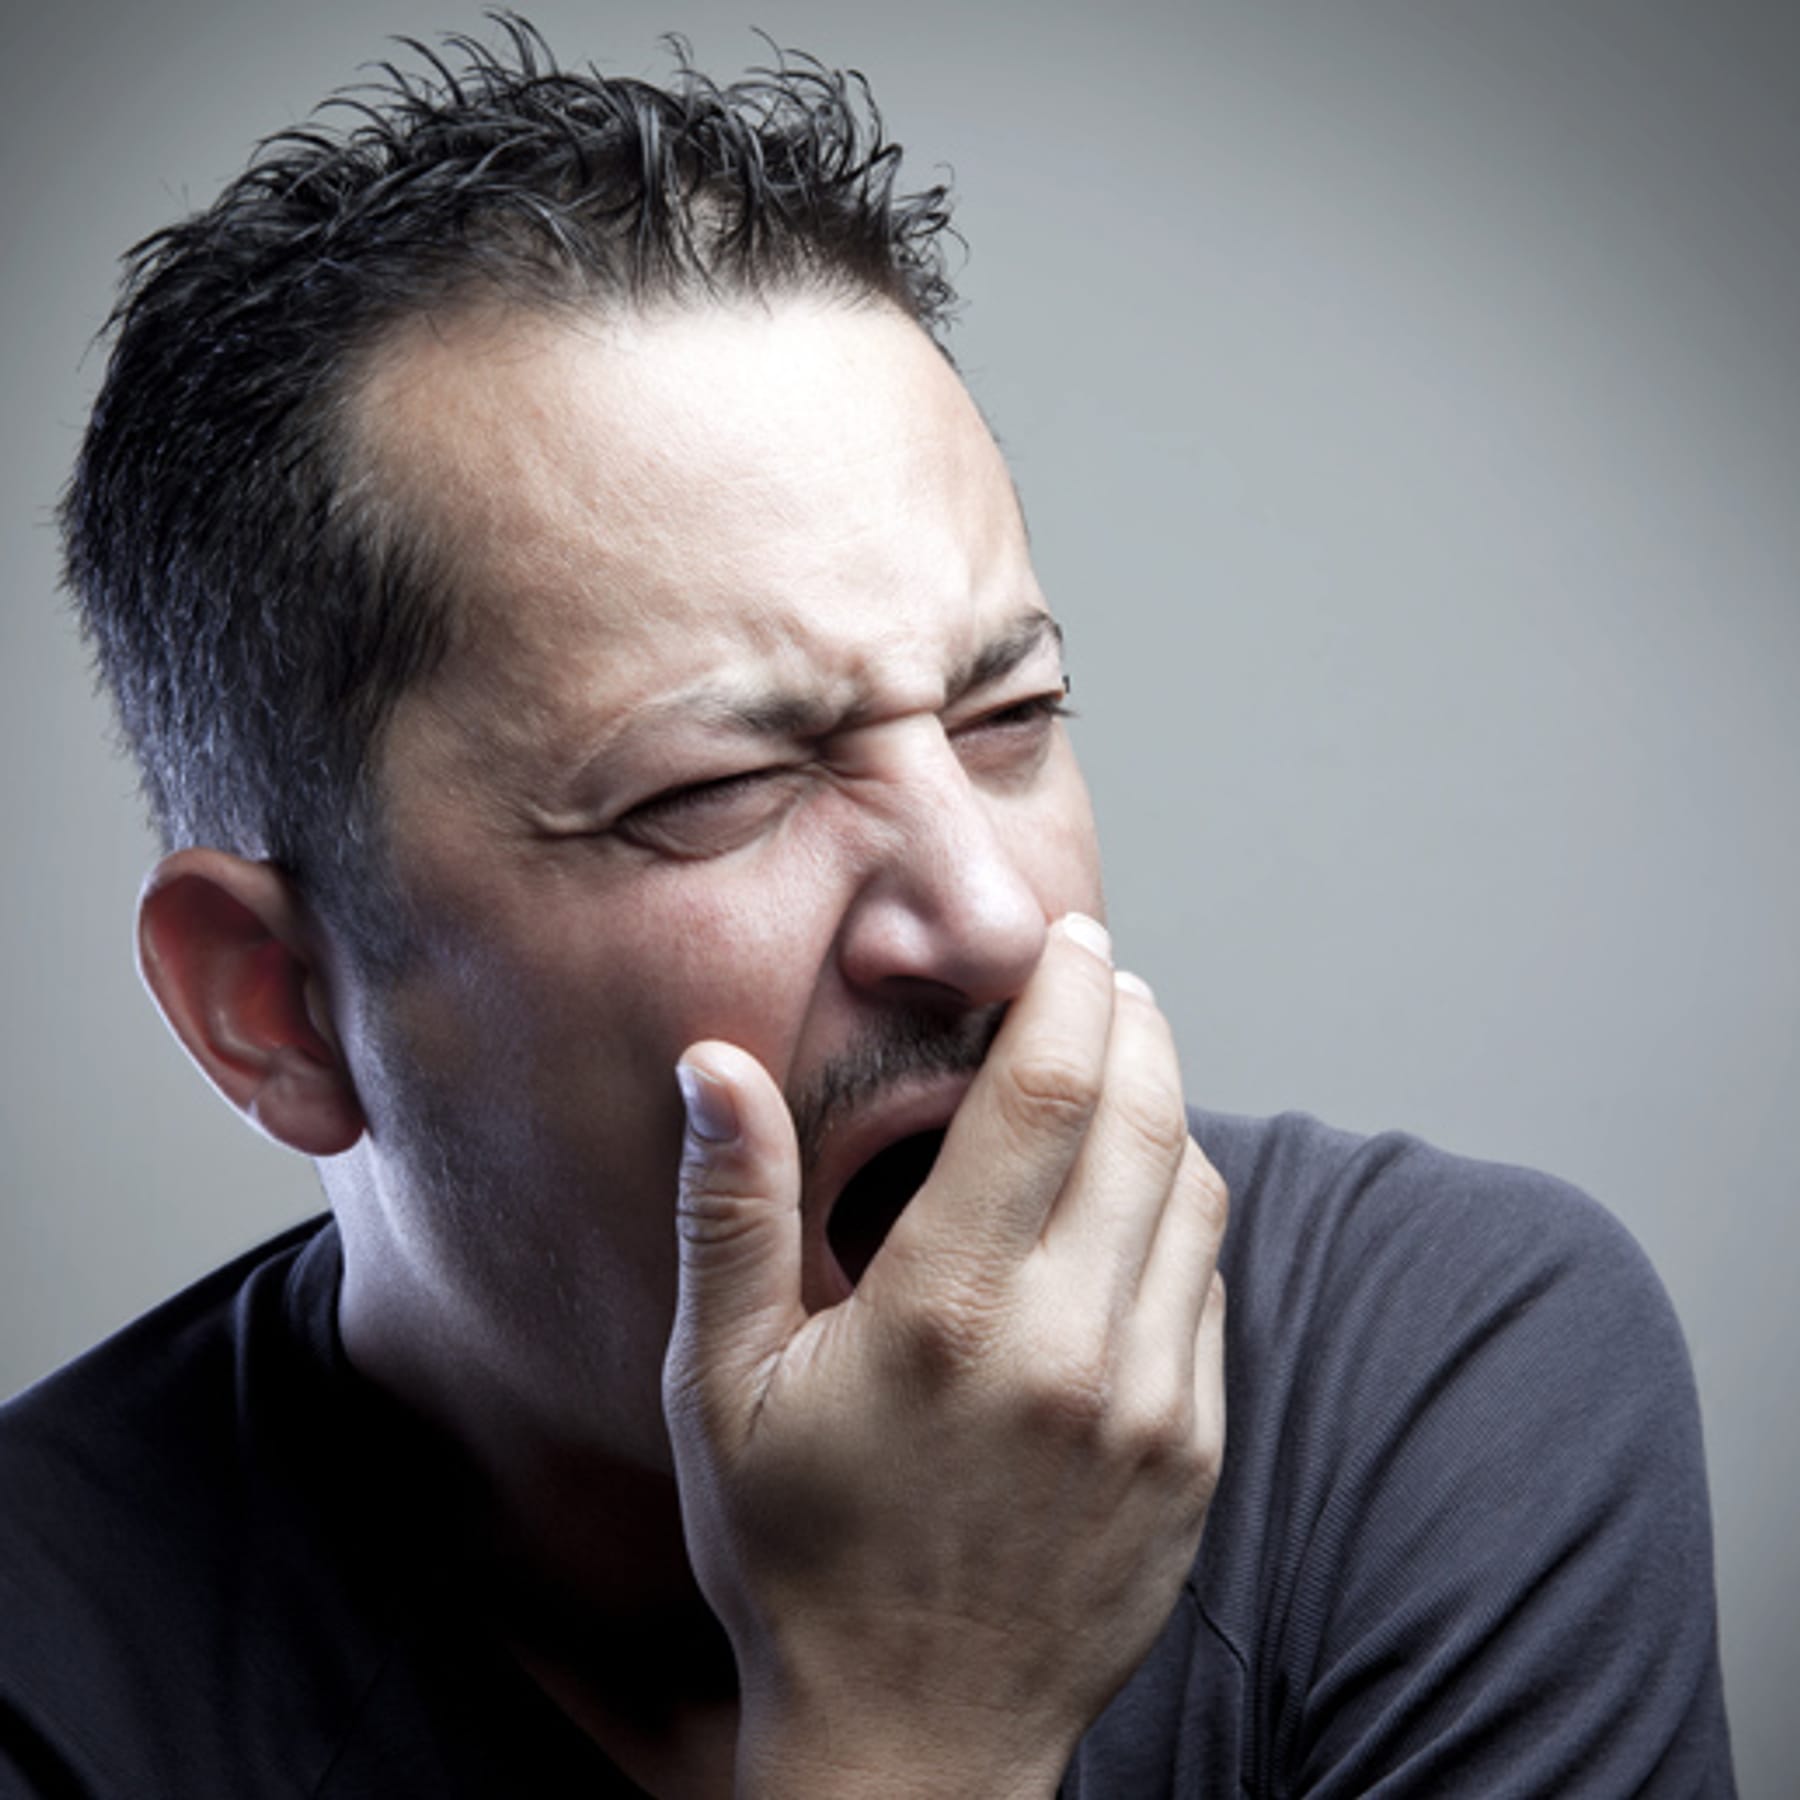 Müdigkeit: Gähnen kühlt das Gehirn.